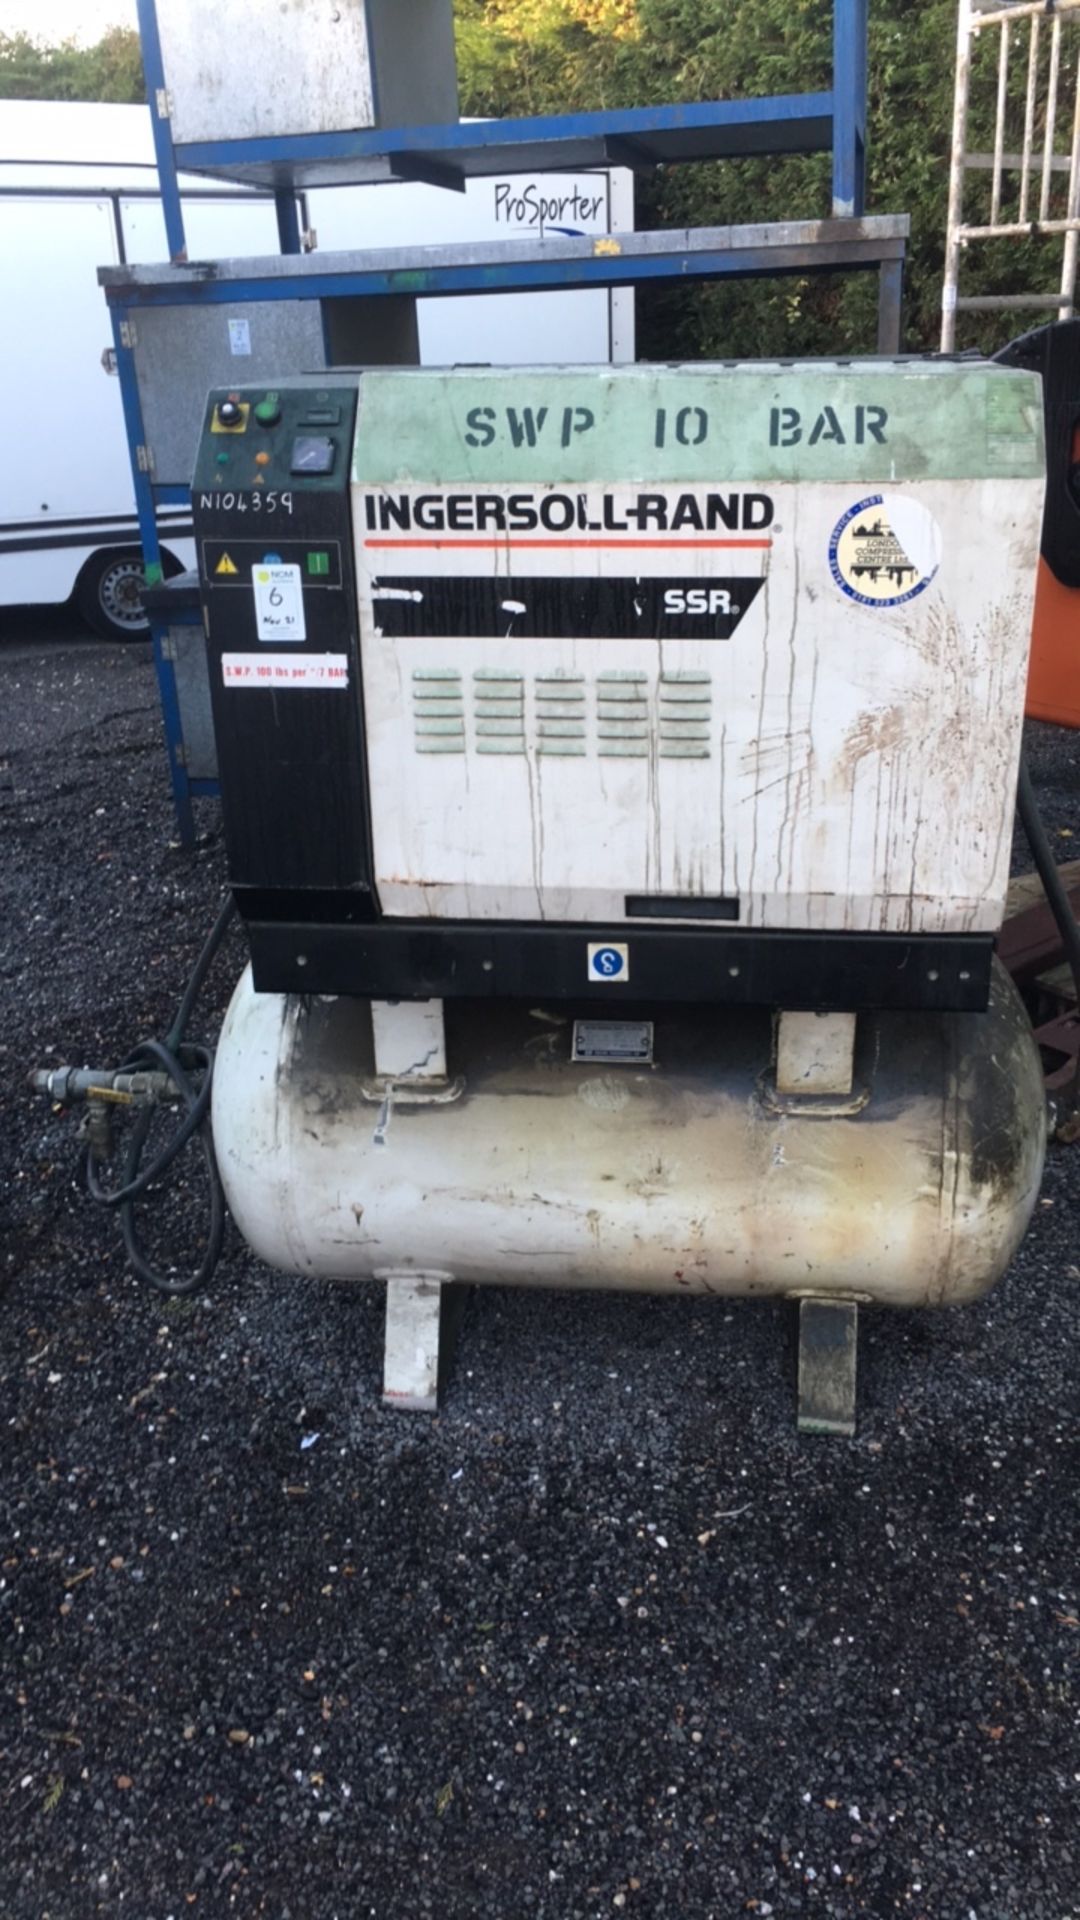 Ingersoll Rand SSR ML7.5 compressor (999, N104359)